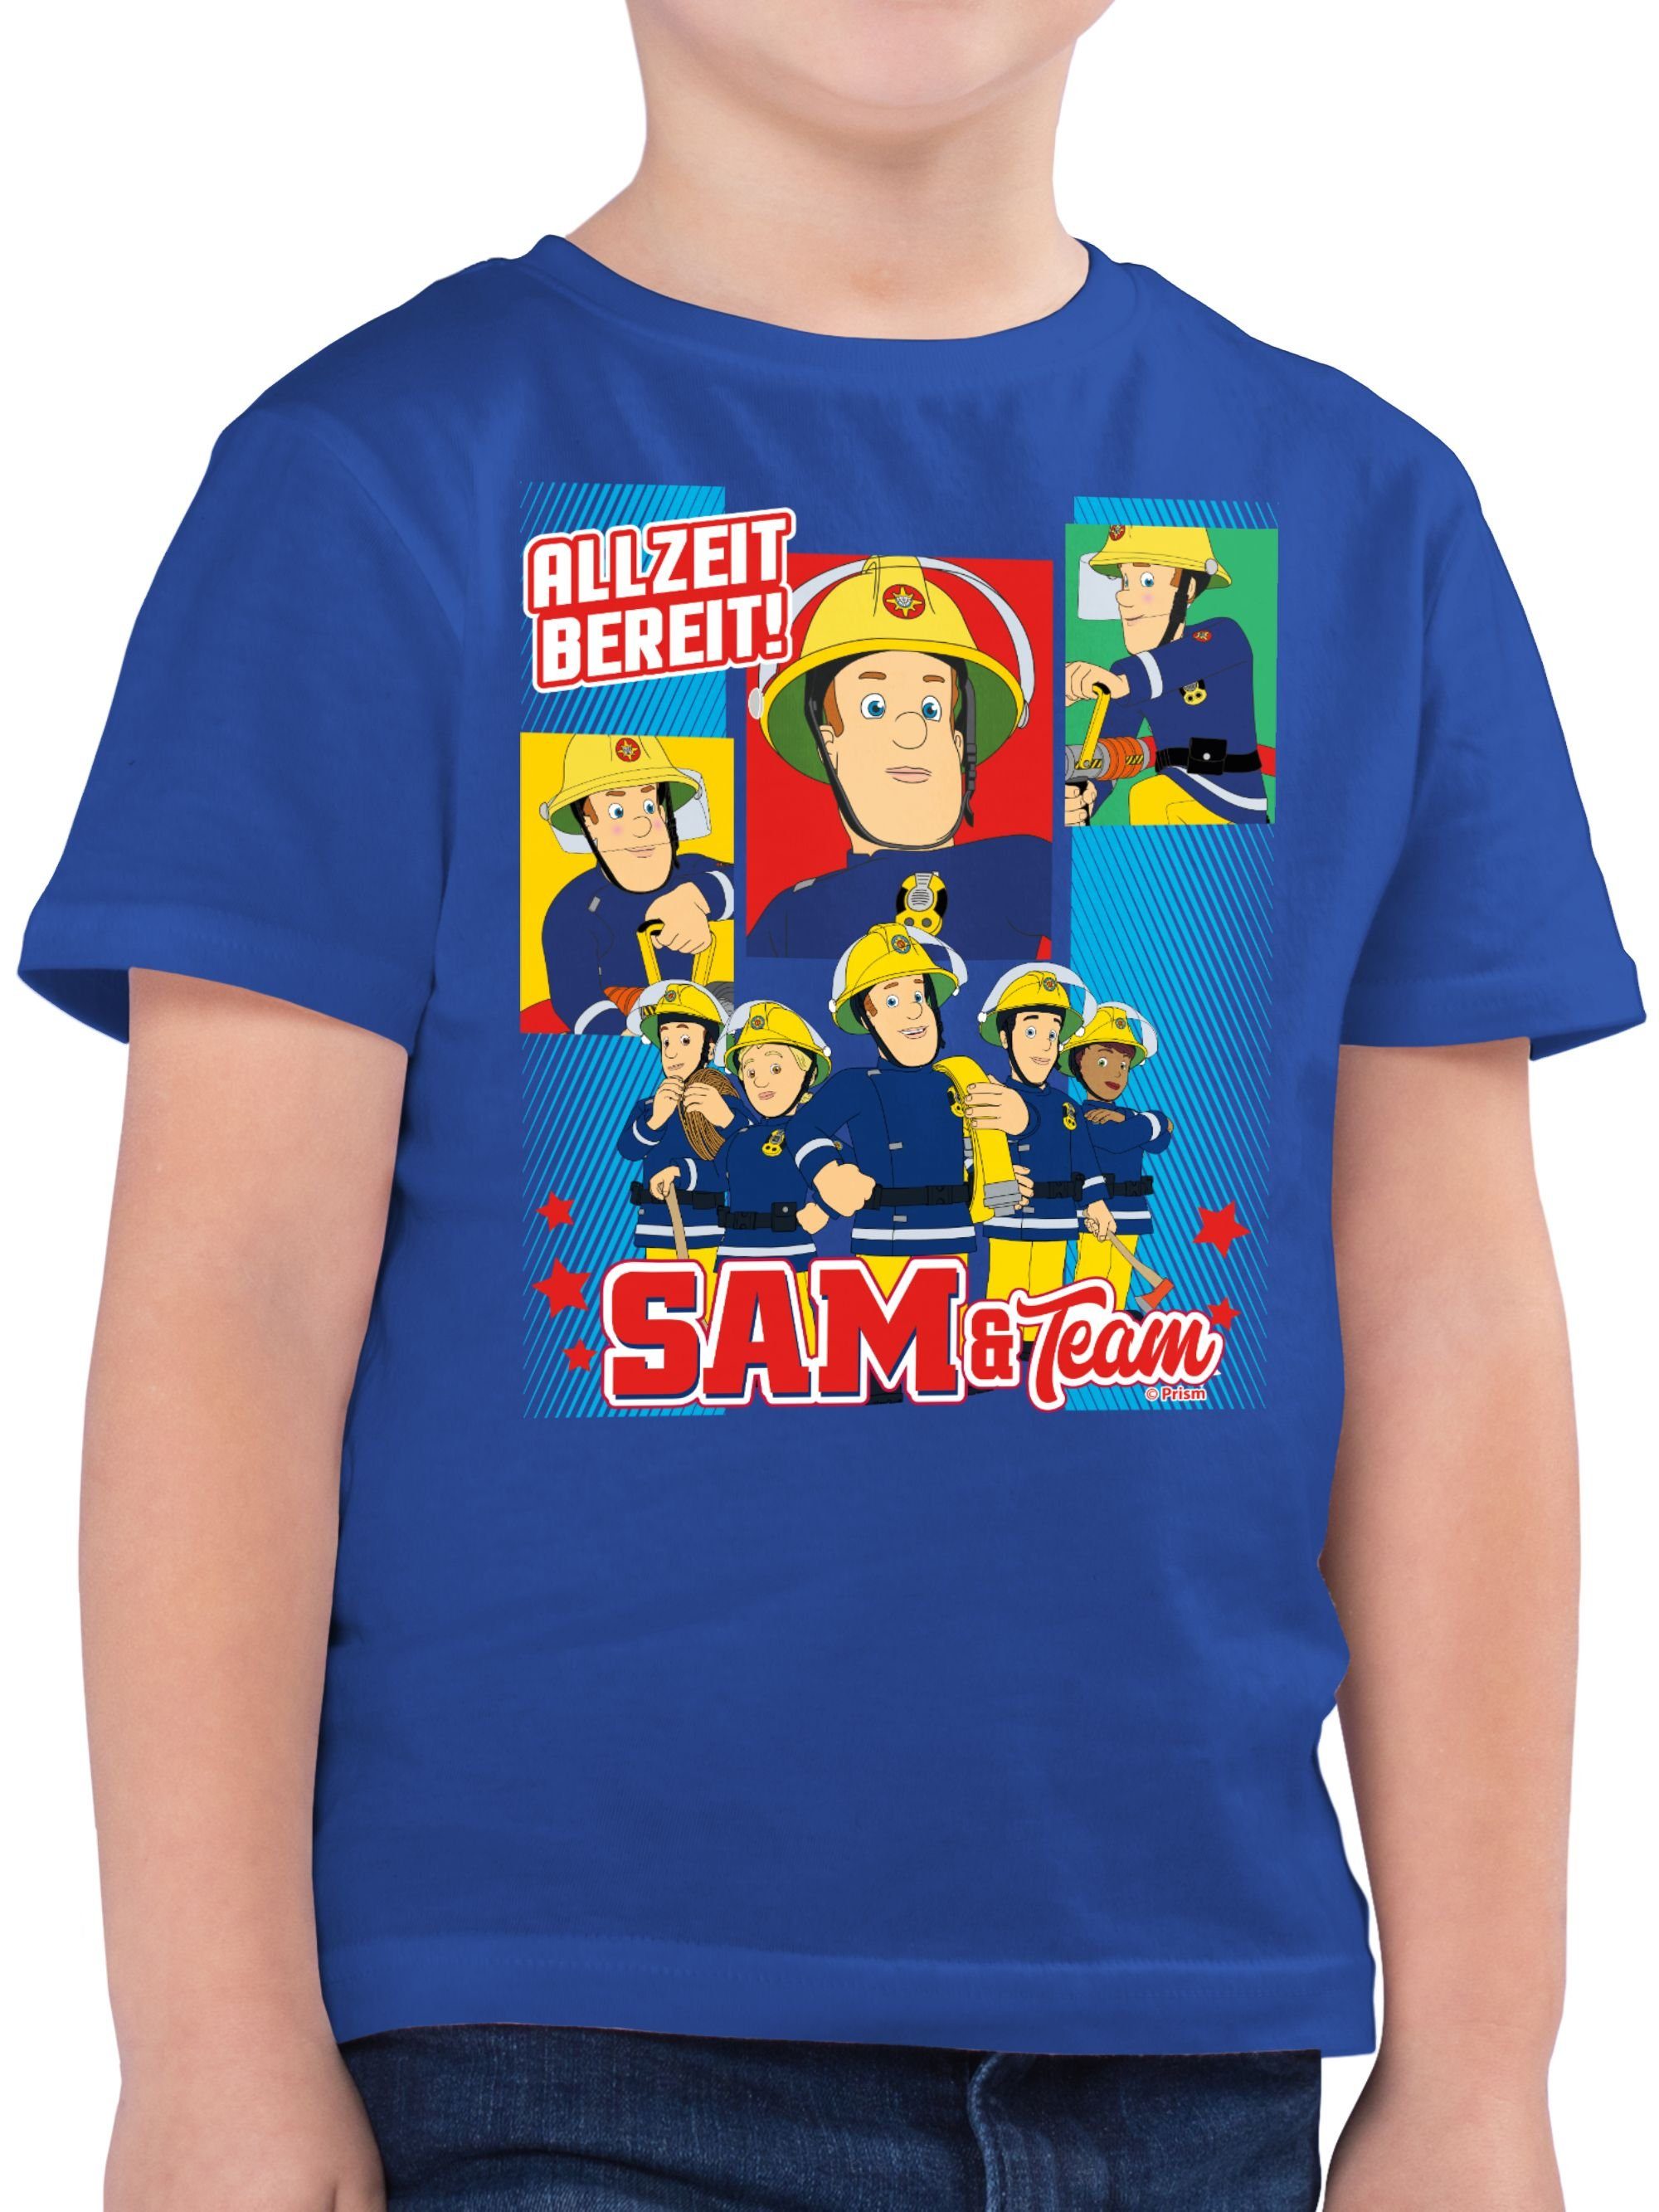 bereit! T-Shirt Jungen Shirtracer Team & Royalblau Feuerwehrmann - Allzeit Sam Sam 02